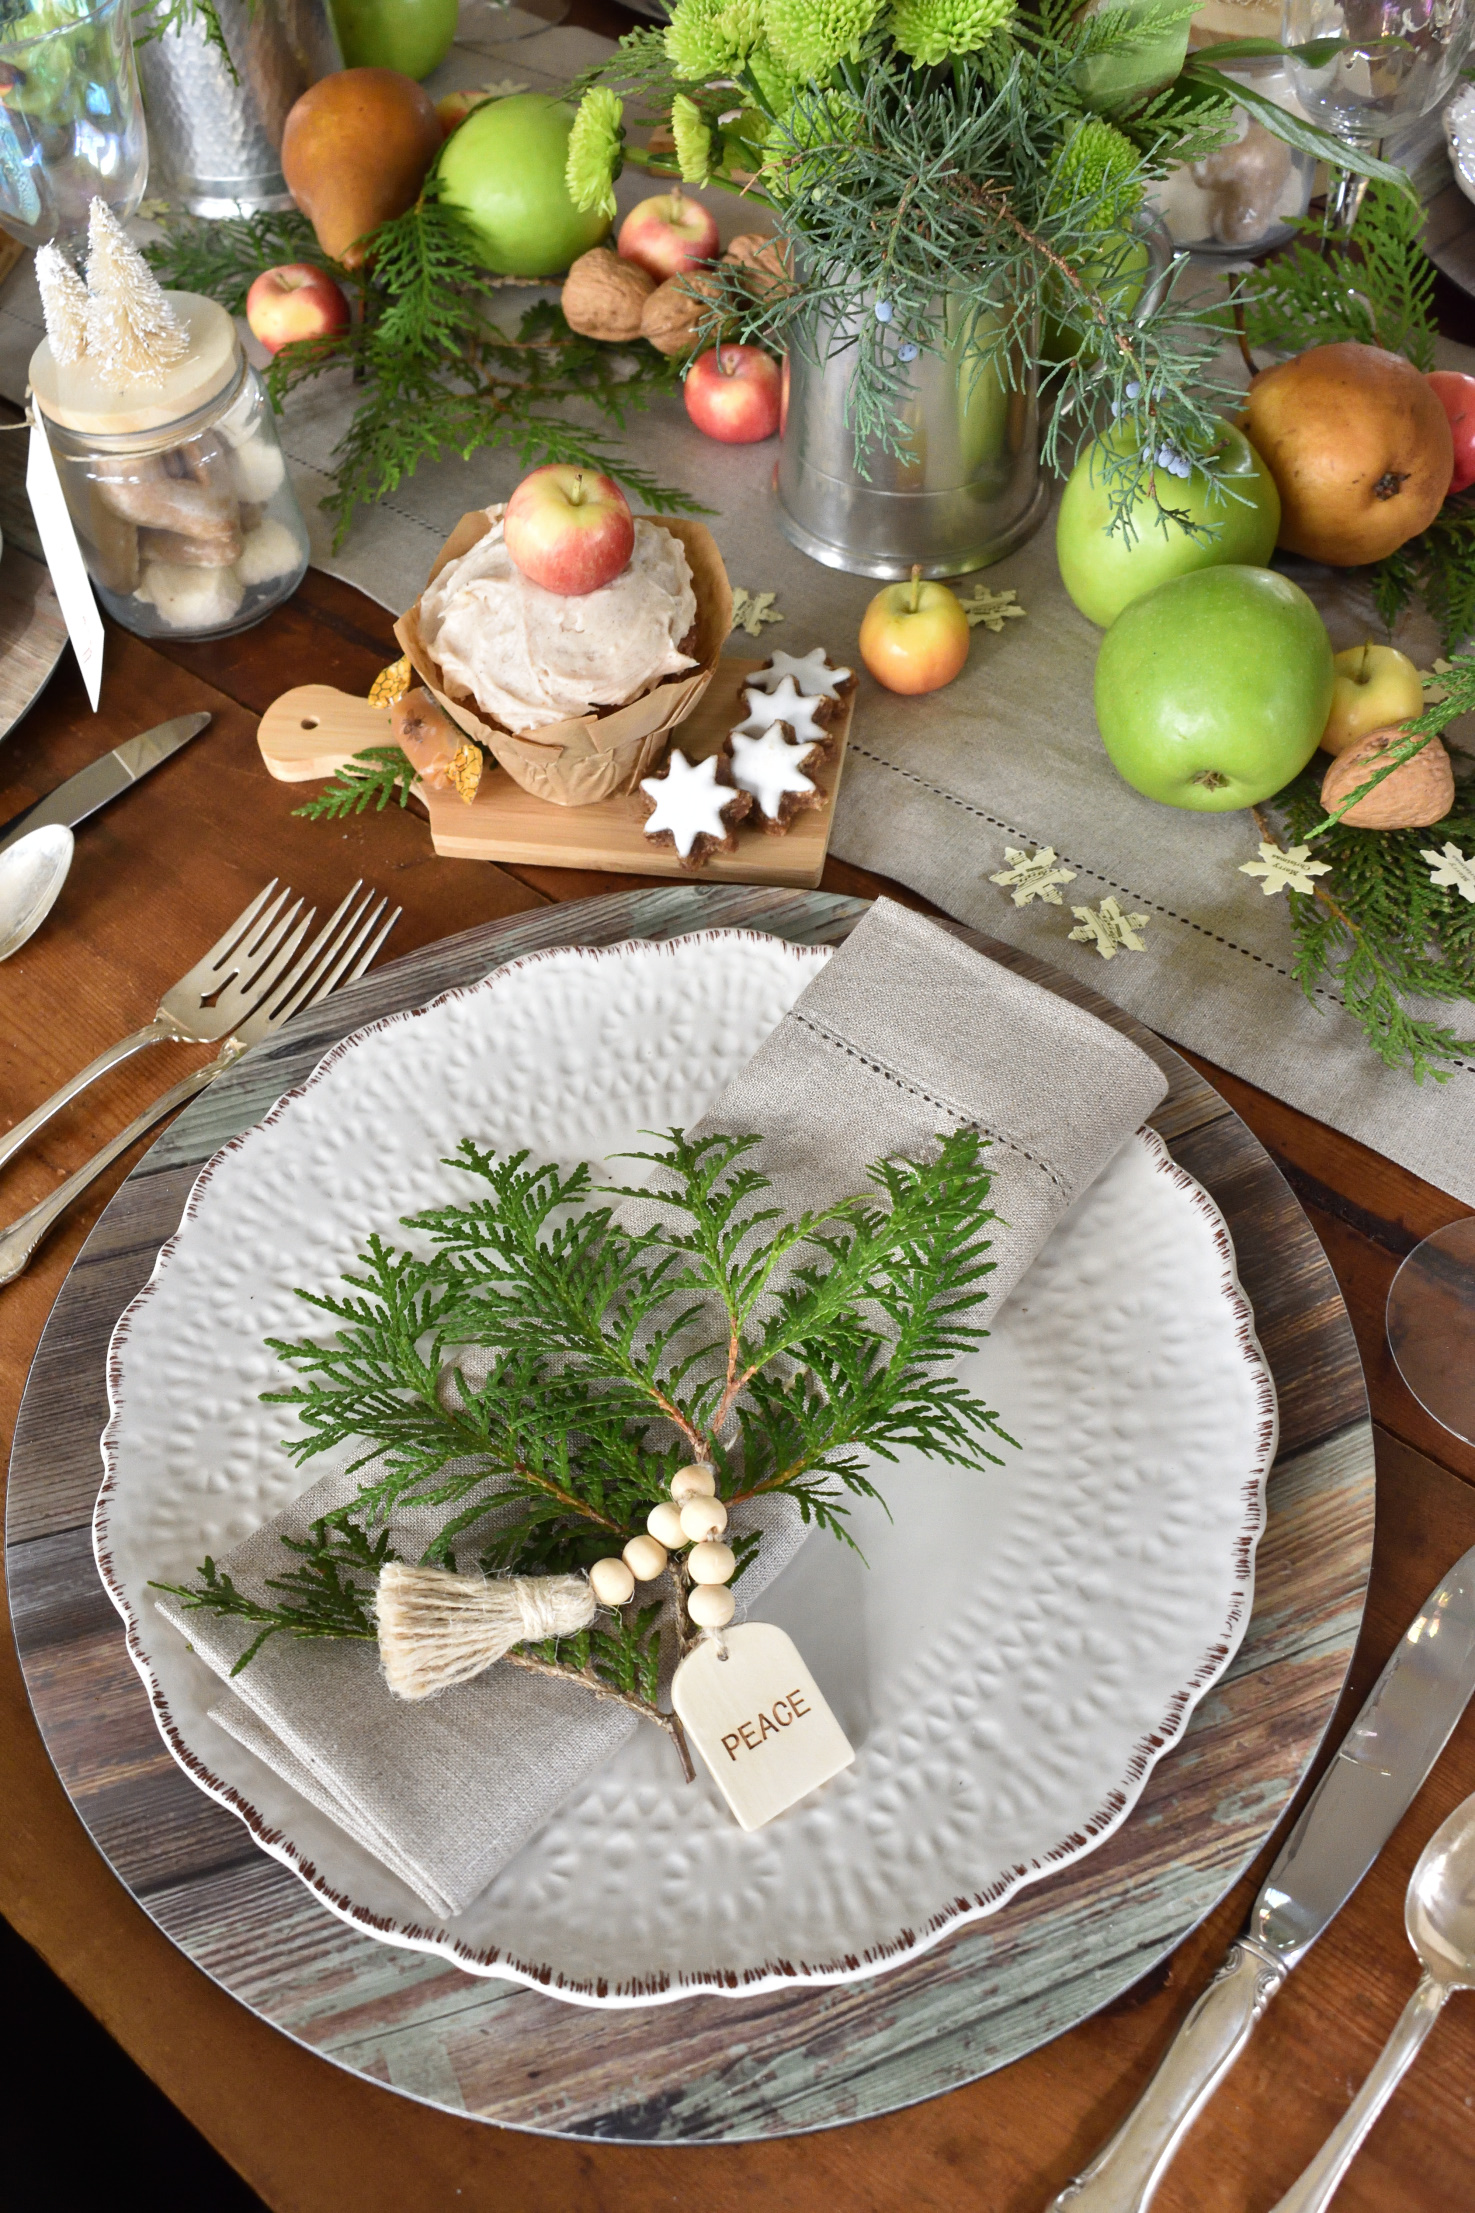 A Christmas table